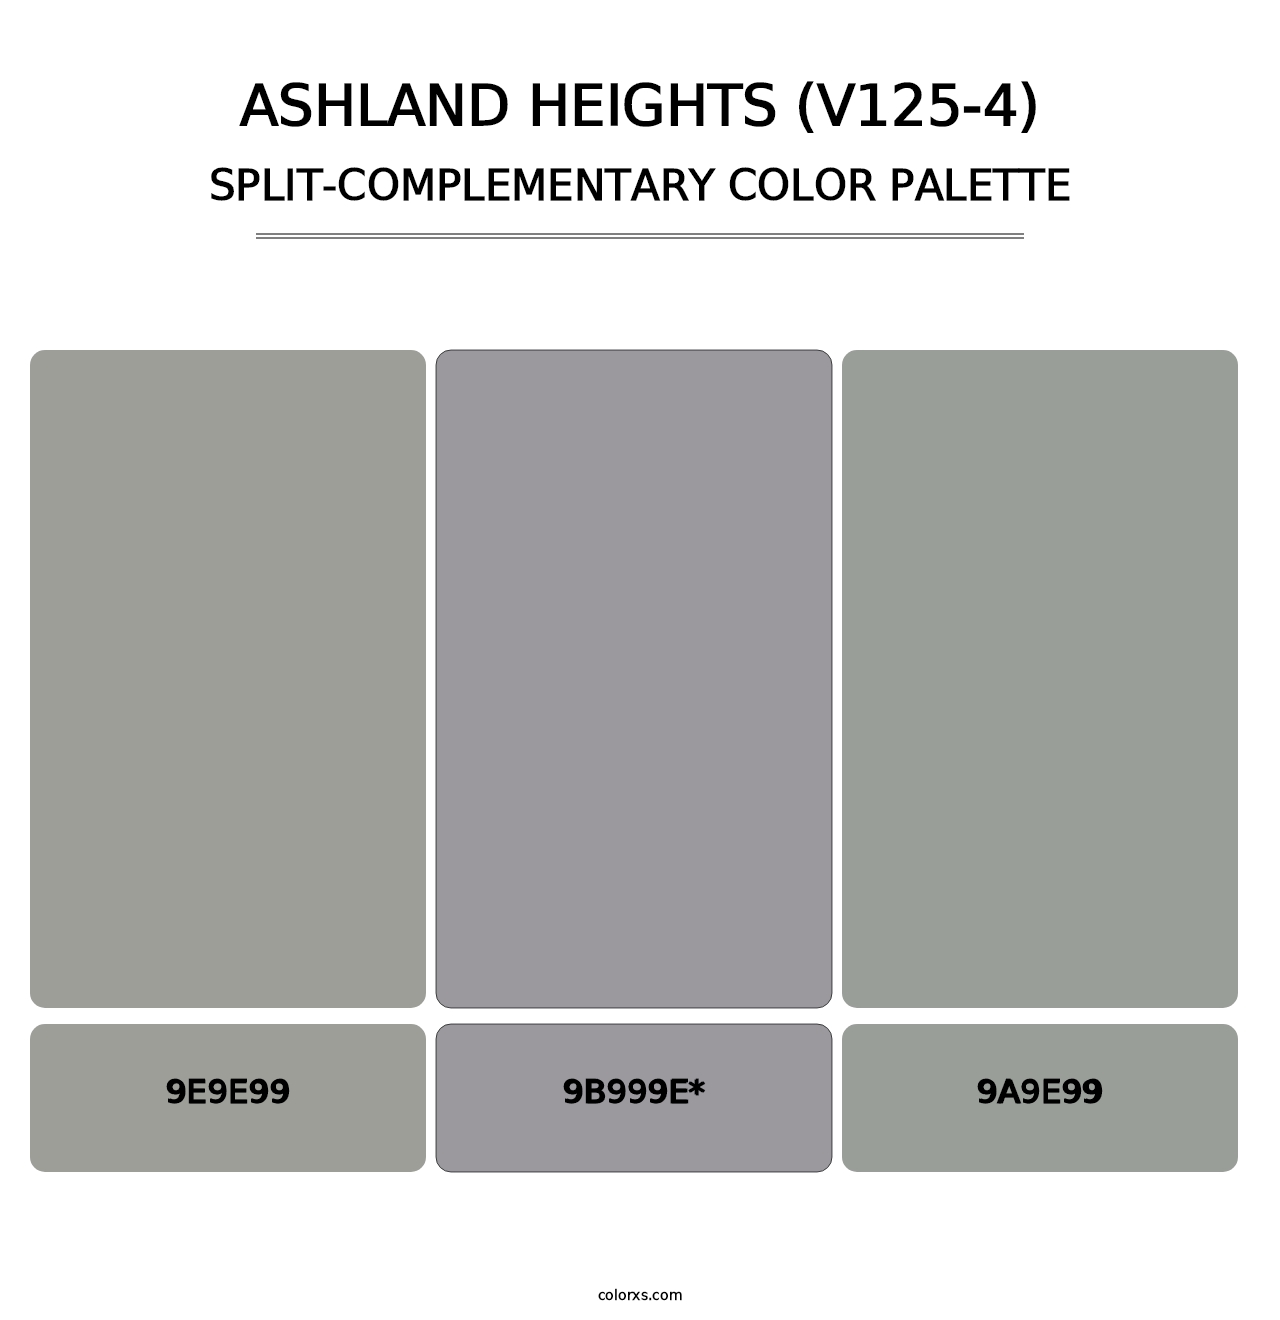 Ashland Heights (V125-4) - Split-Complementary Color Palette